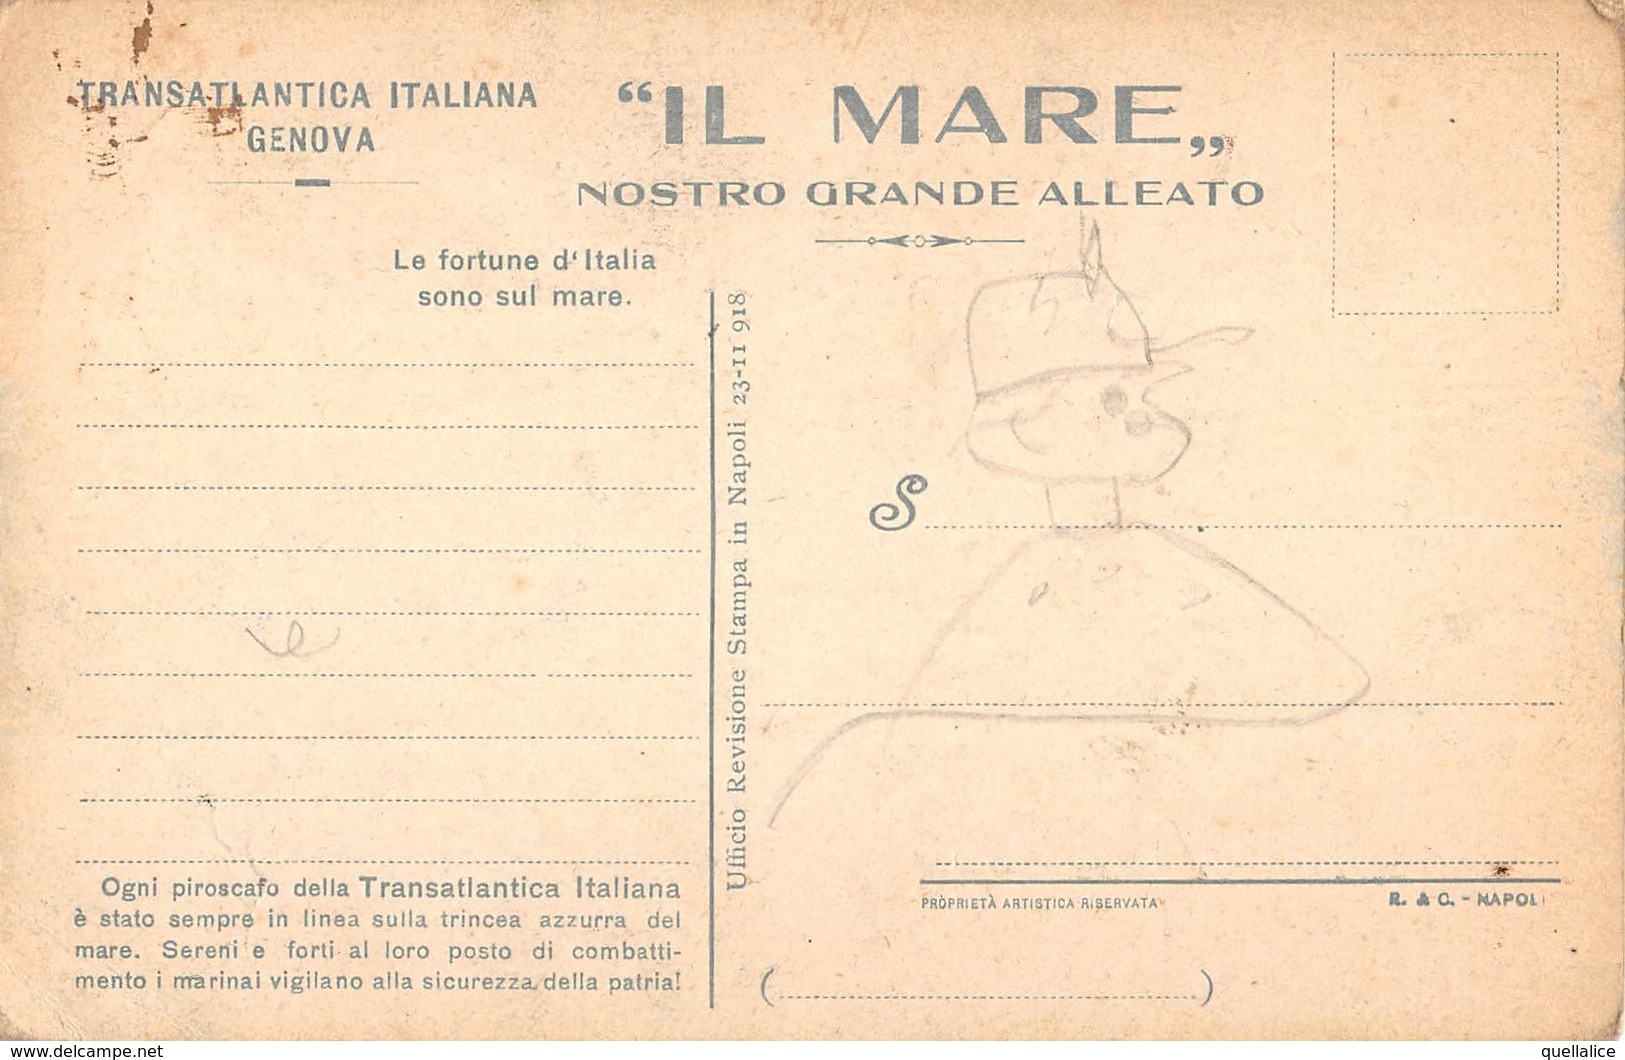 01255 "TRANSATLANTICA ITALIANA - GENOVA - IL MARE - IL NOSTRO GRANDE ALLEATO - PIROSCAFO" ANIMATA. CART NON SPED - Banche